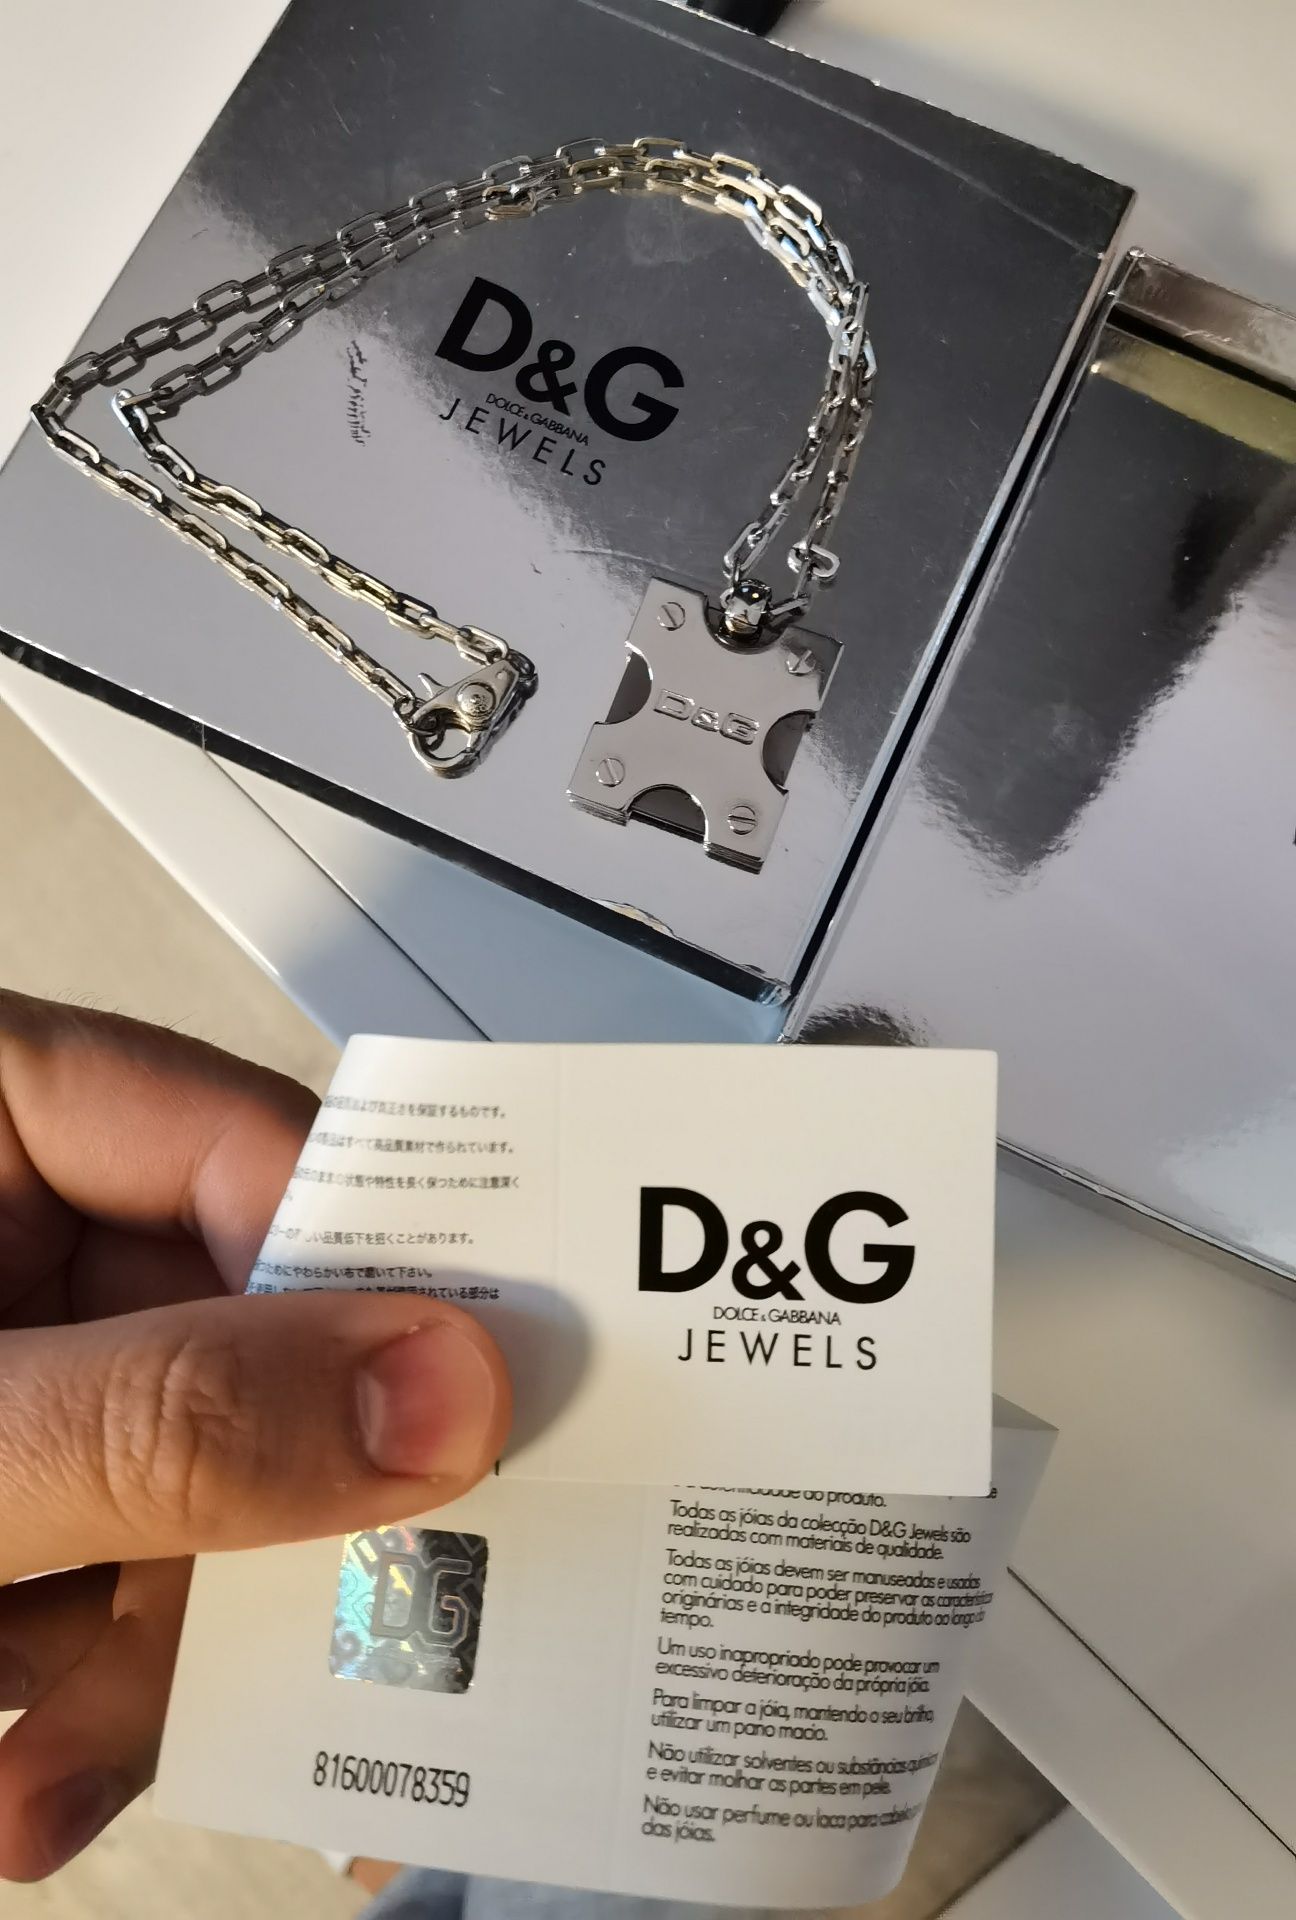 Vând bijuterie D&G cu certificat de autenticitate